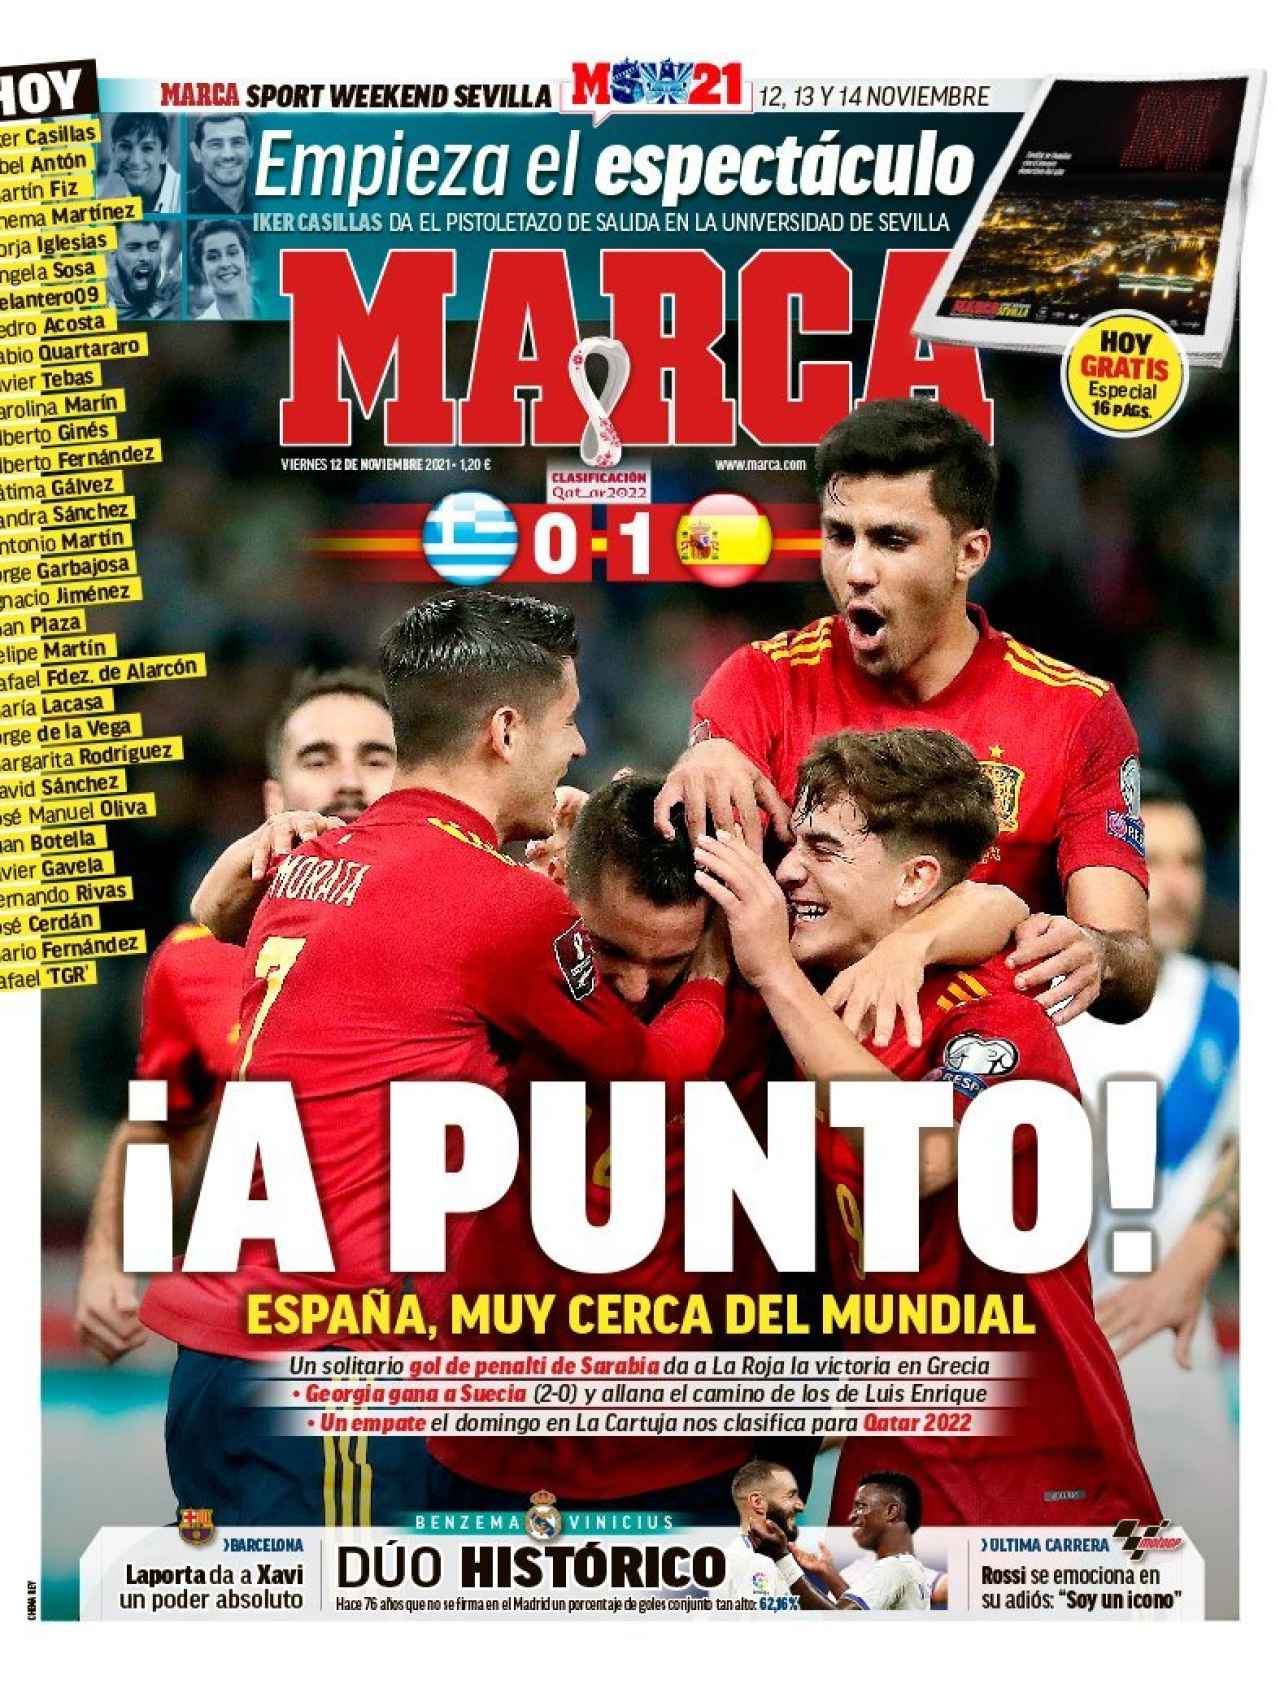 La portada del diario MARCA (12/11/2021)